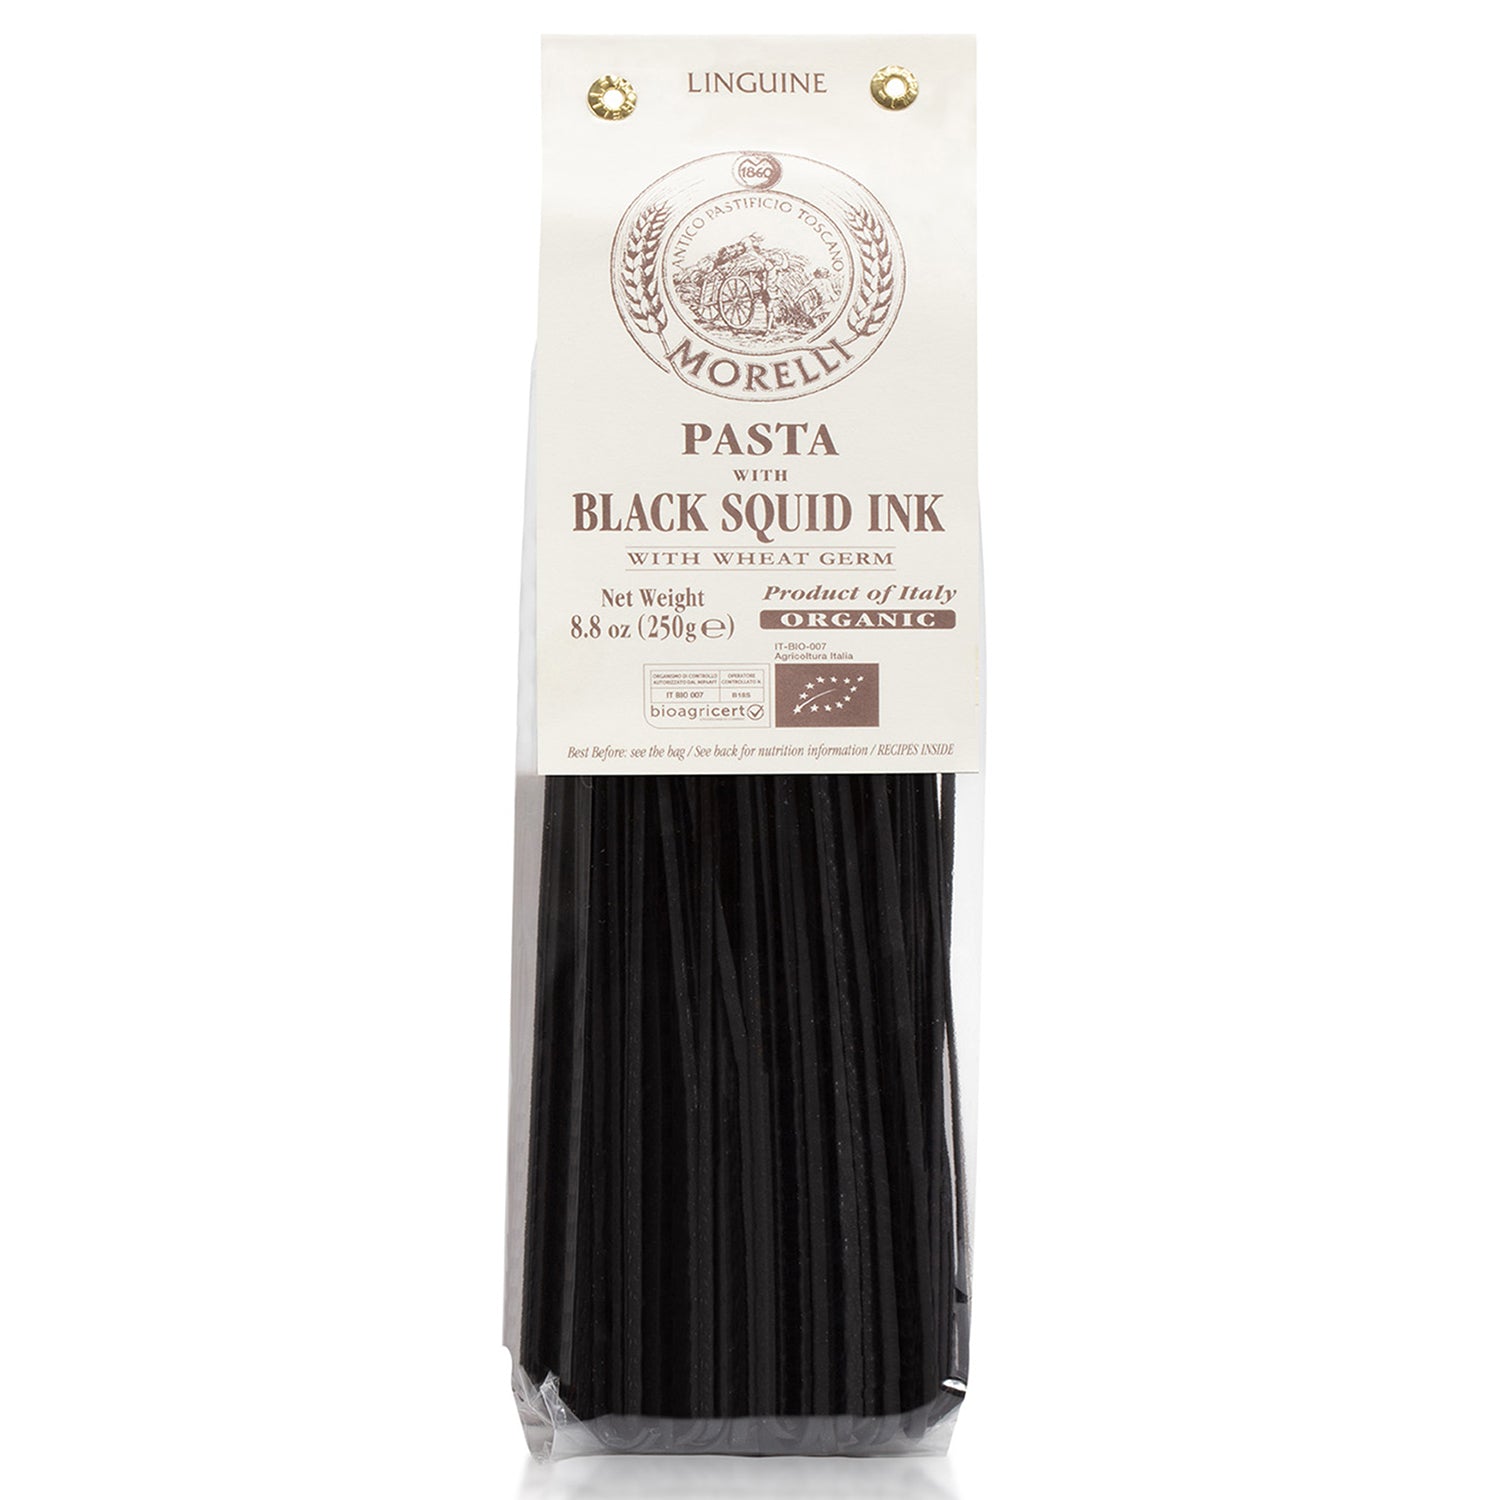 Squid Ink Pasta Linguine - Organic Italian Pasta by Morelli